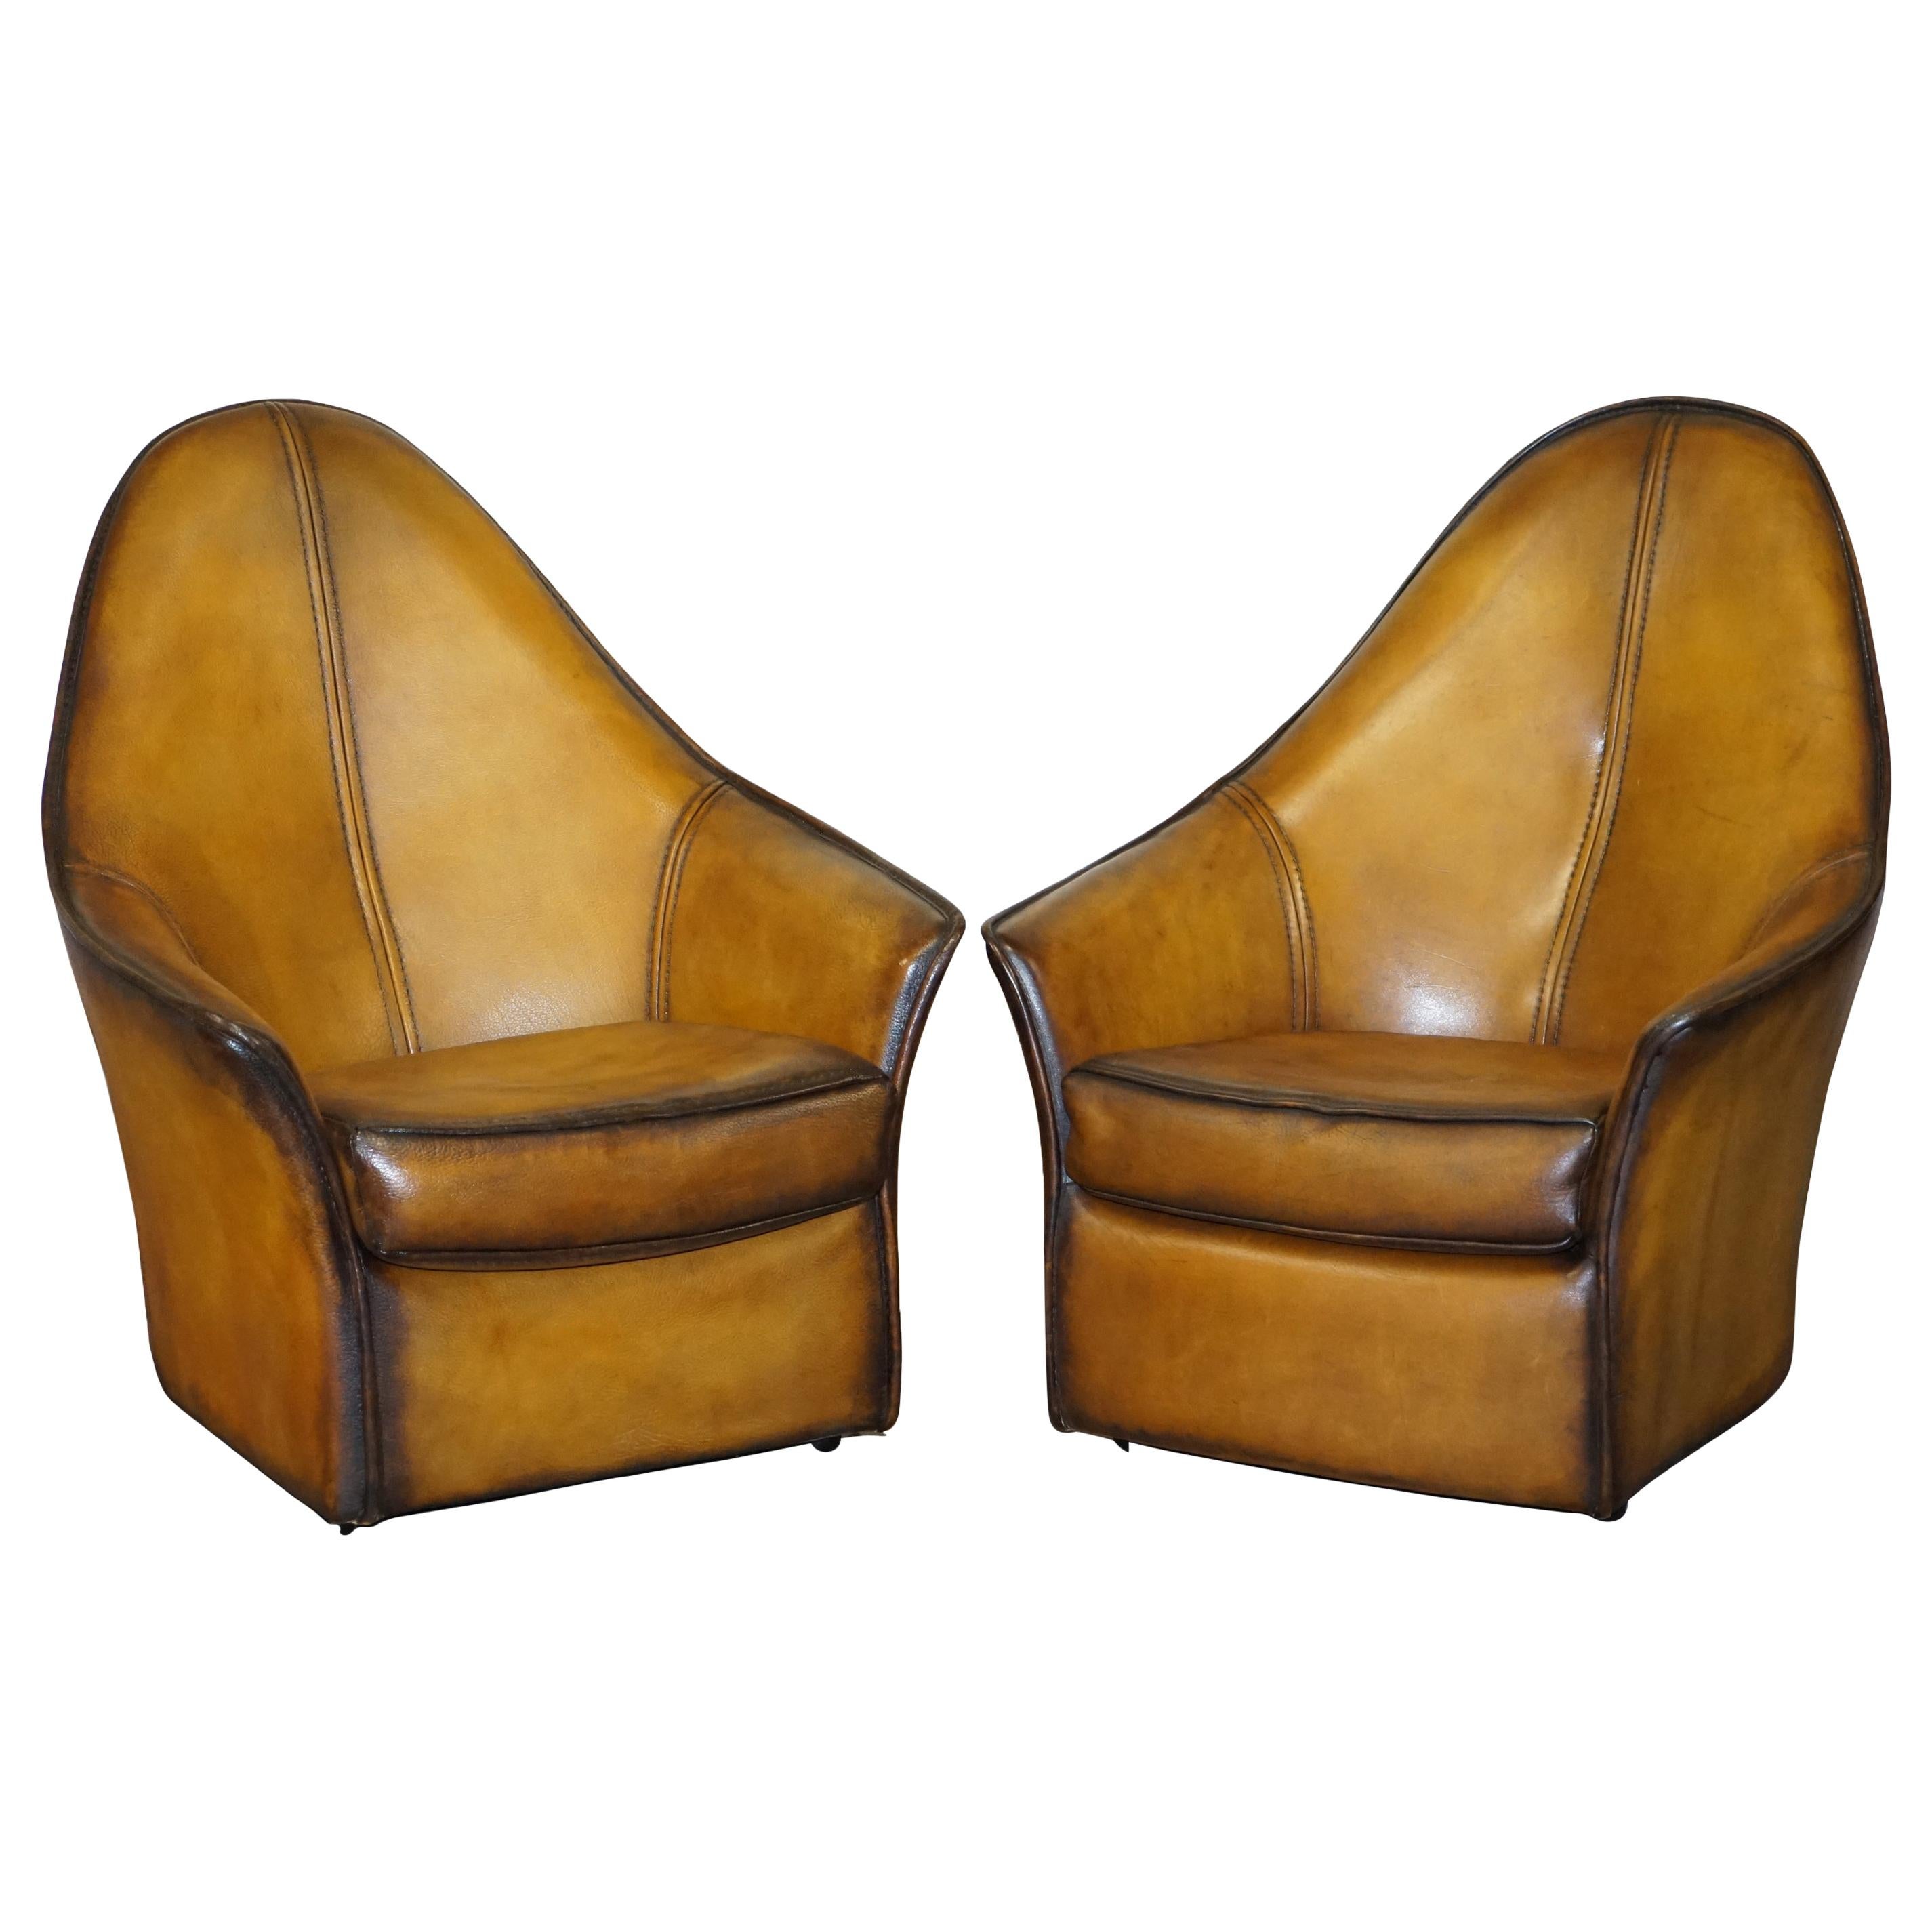 Paire de fauteuils modernes d'art à dossier incurvé en cuir marron restaurés, faisant partie de la suite en vente